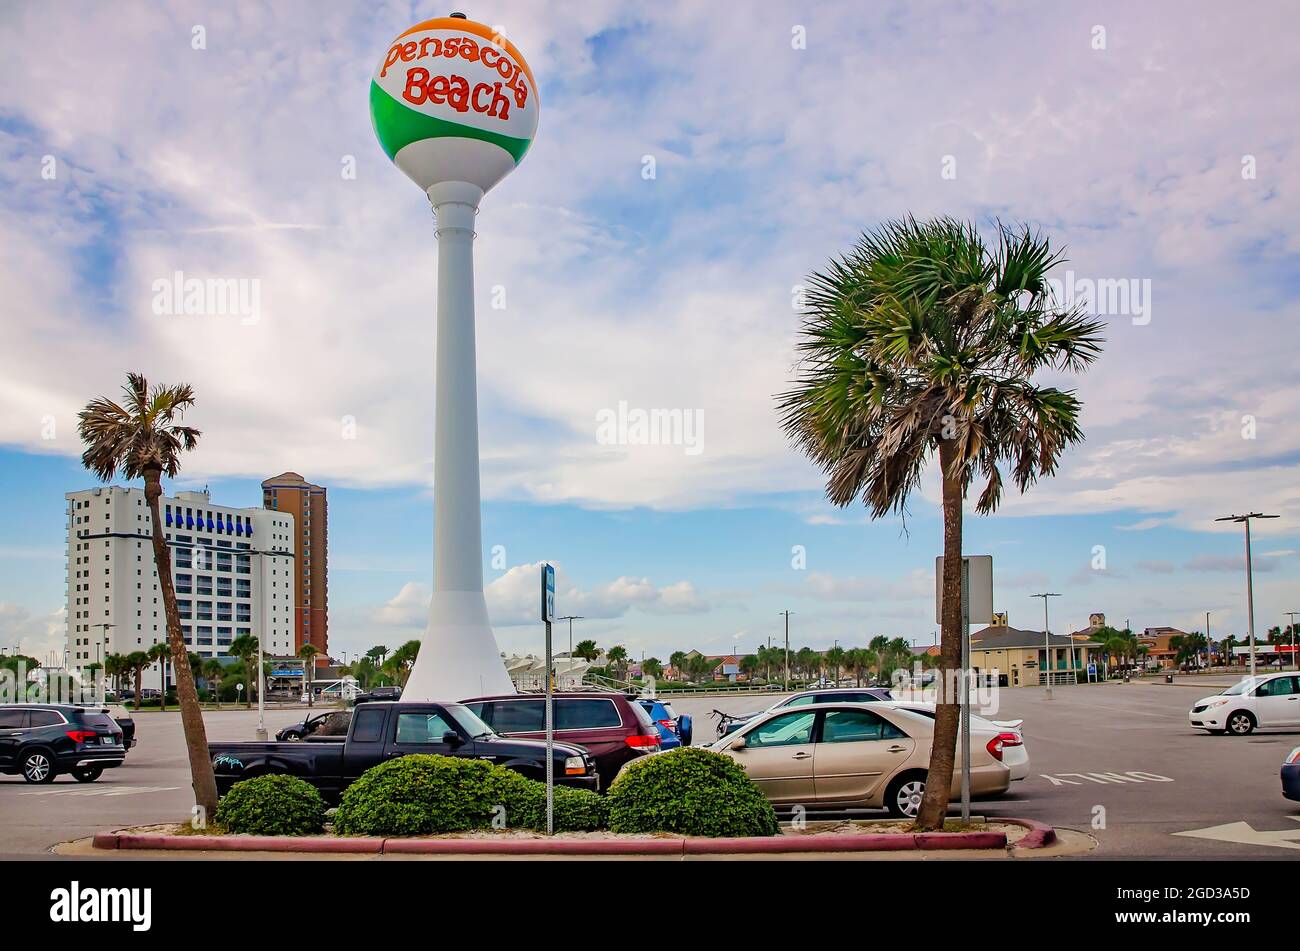 Pensacola’s ikonischer Beach Ball Water Tower, der nicht mehr in Betrieb ist, ist am Pensacola Beach am 9. Oktober 2018 in Pensacola, Florida, abgebildet. Stockfoto